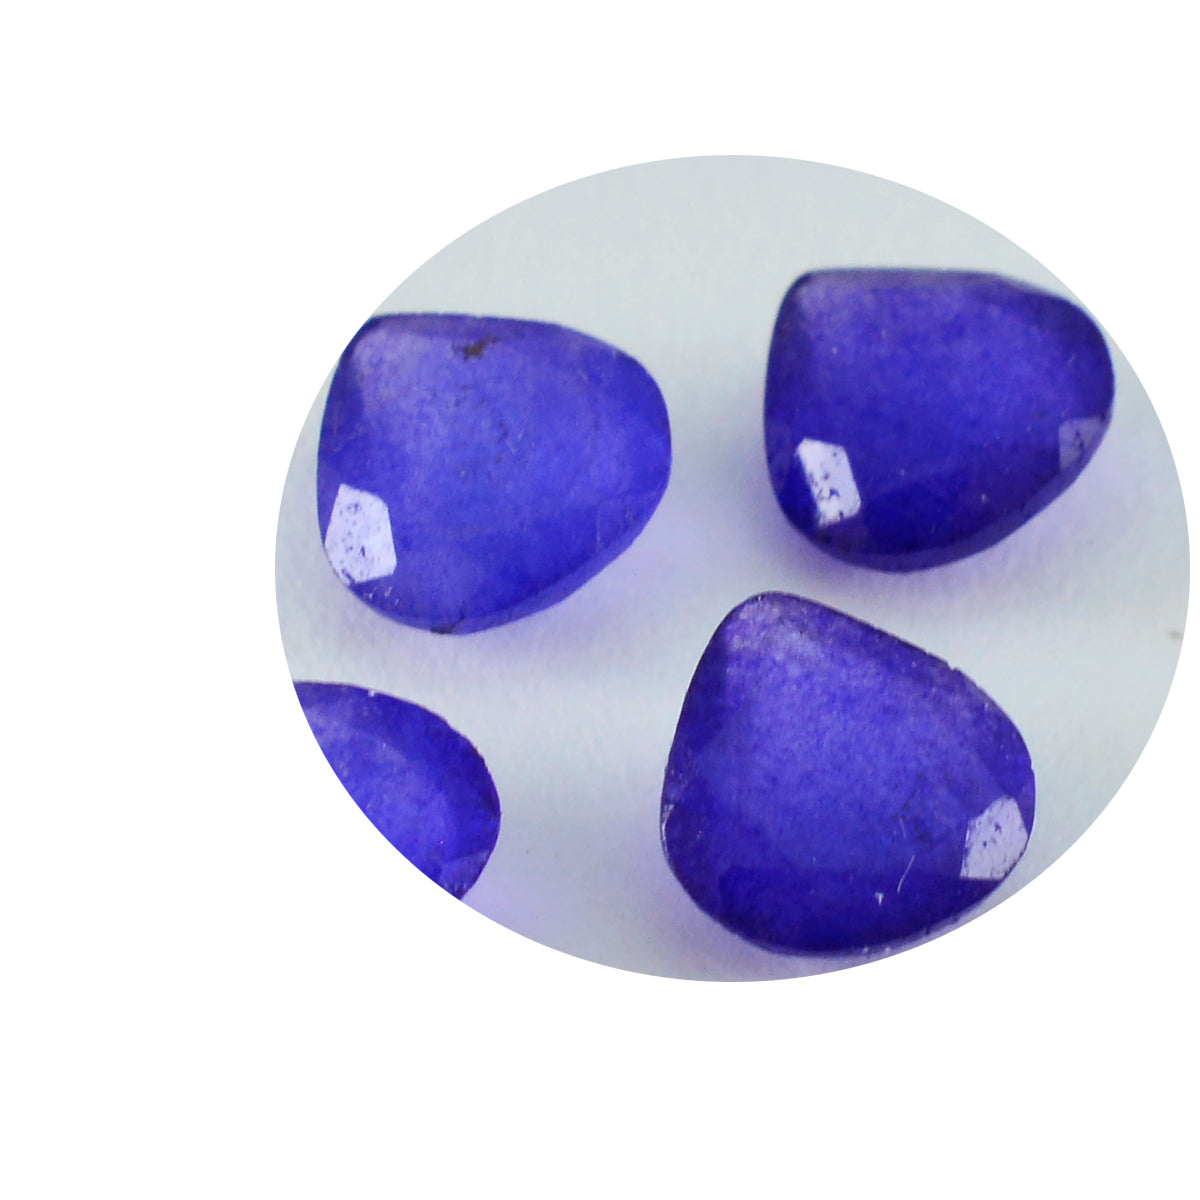 riyogems 1 шт. натуральная синяя яшма граненая 11x11 мм драгоценный камень в форме сердца превосходного качества